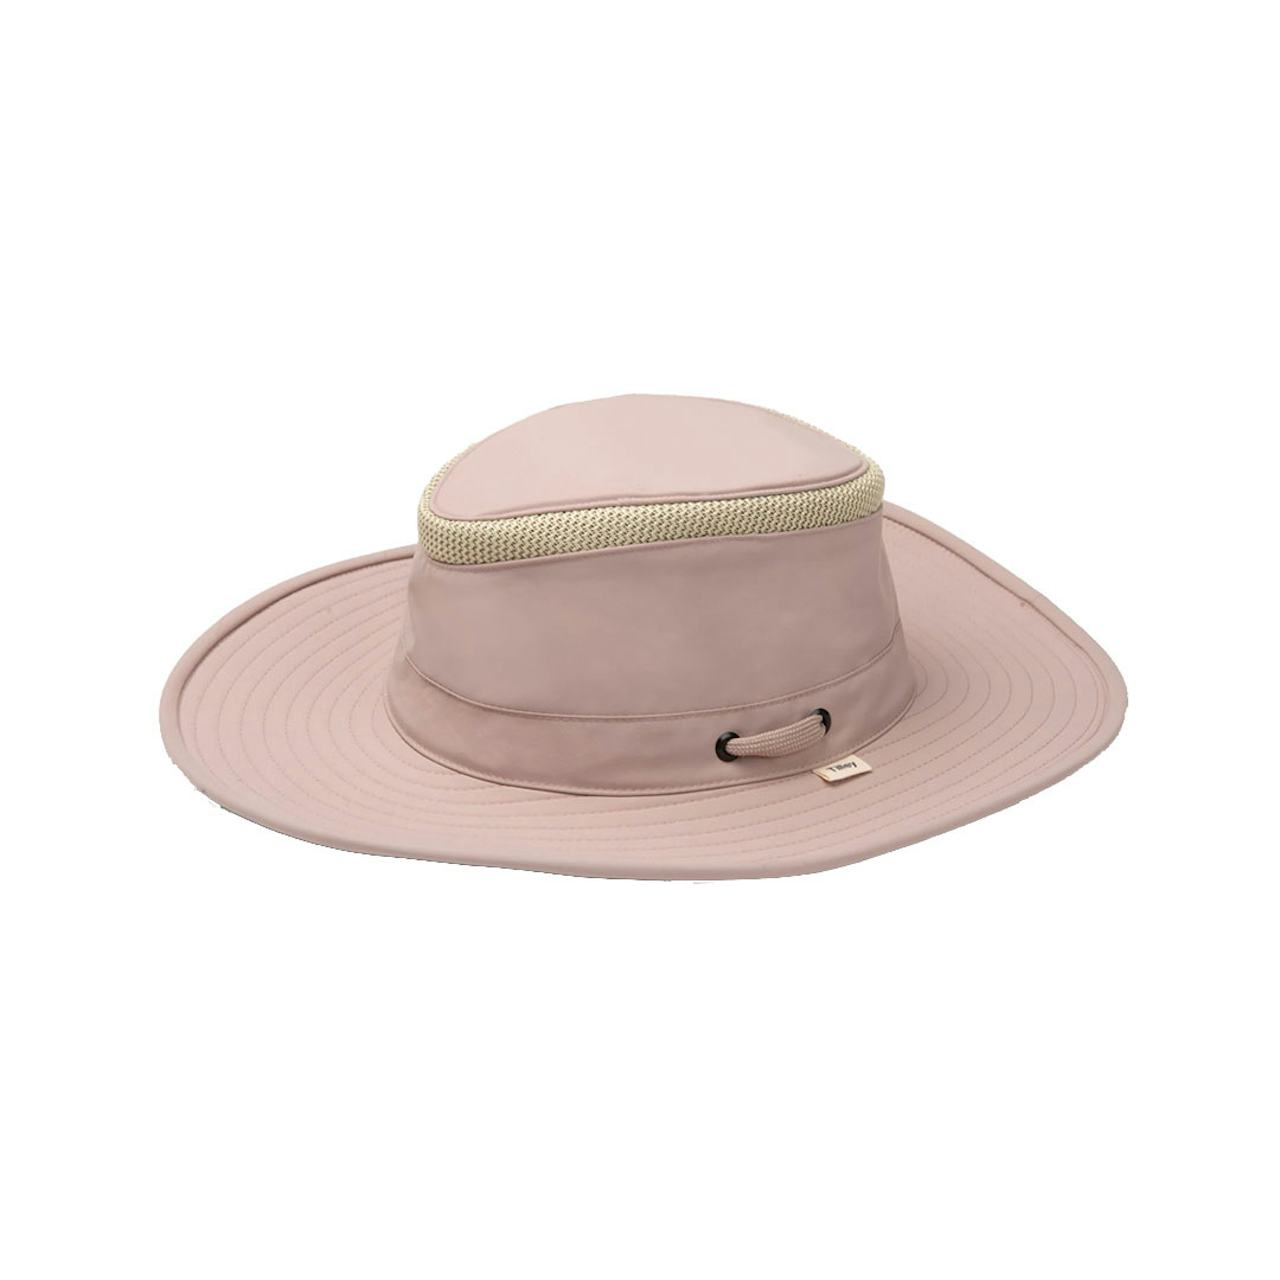 Tilley LTM6-OLIV Airflo Hat Olive – J.C. Western® Wear